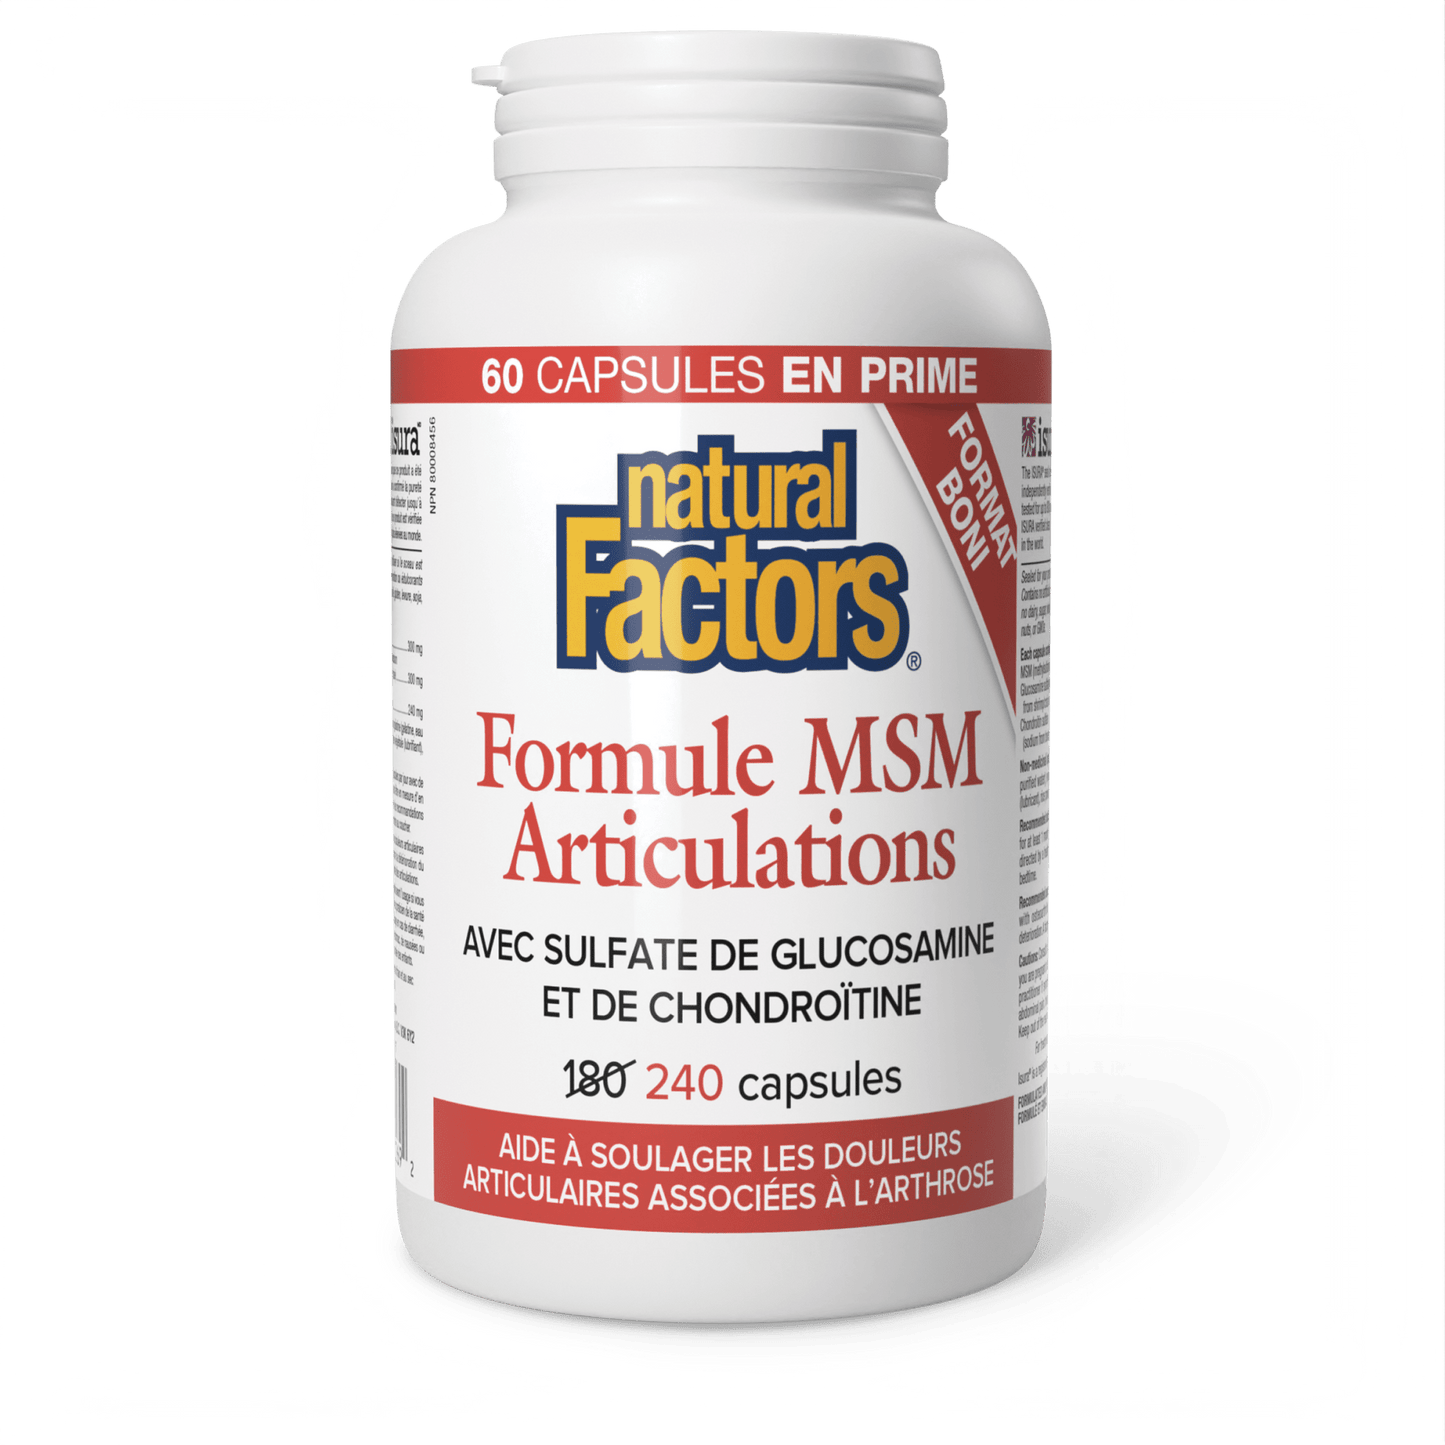 Formule MSM Articulations, Natural Factors|v|image|8269